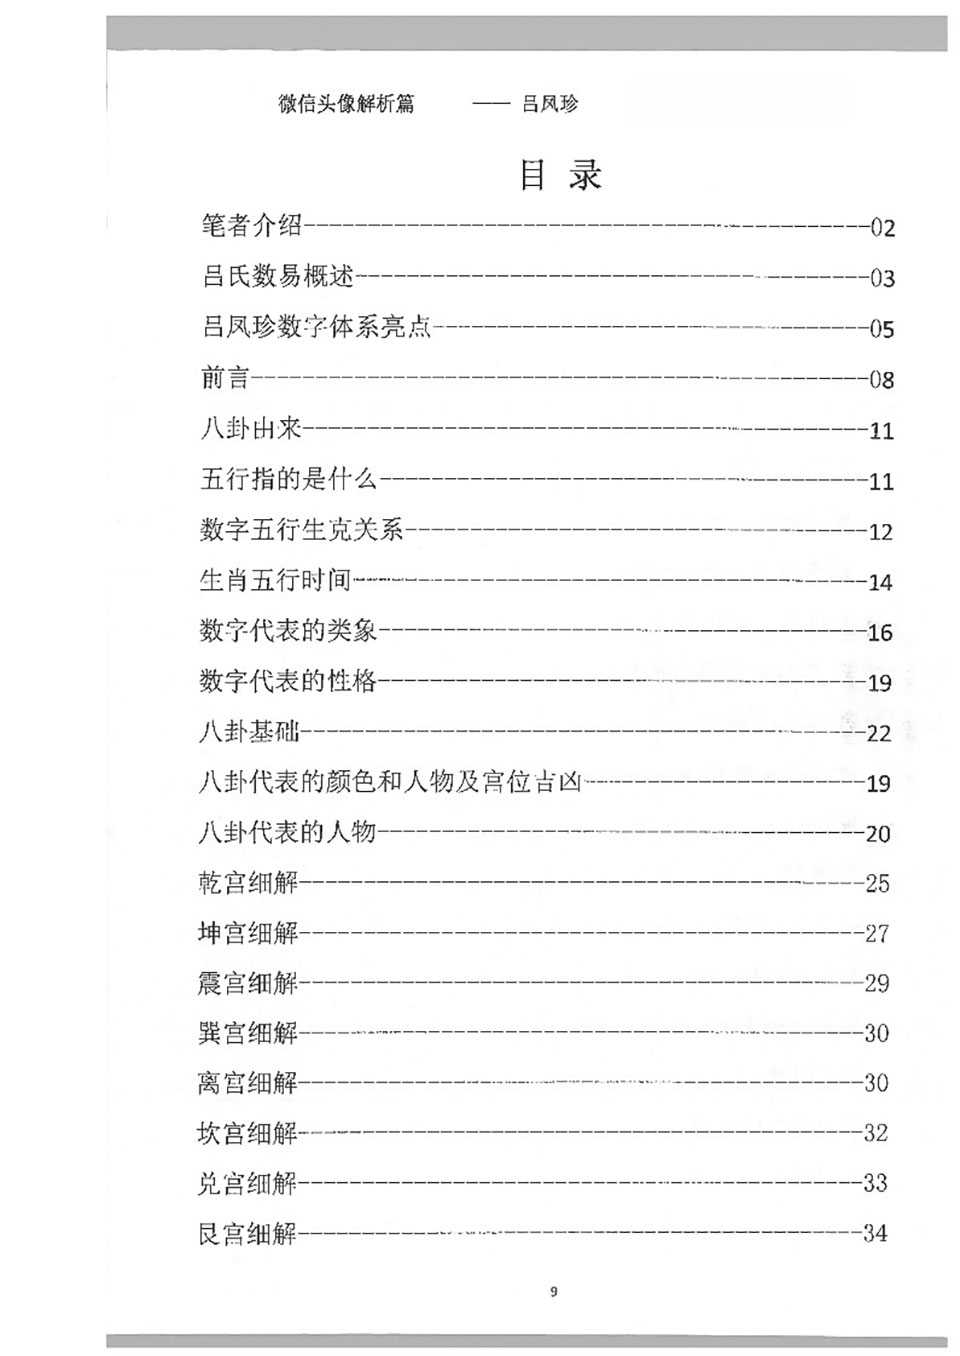 Lv Fengzhen WeChat Avatar Analysis.pdf